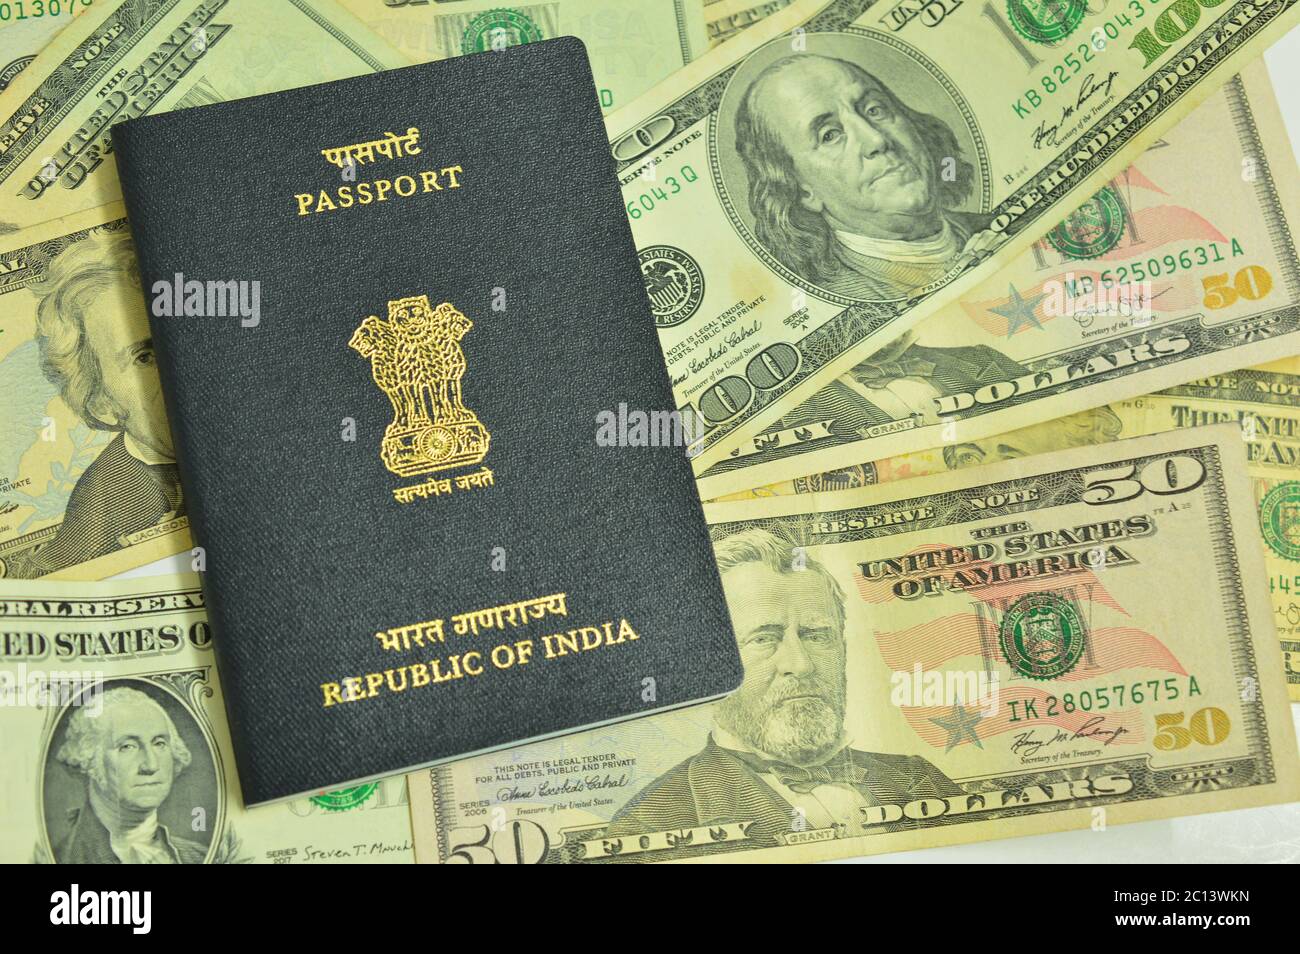 Passeport indien sur les billets en devise américaine. Le passeport est un document de voyage émis par le gouvernement du pays aux citoyens et en dollars américains. Banque D'Images